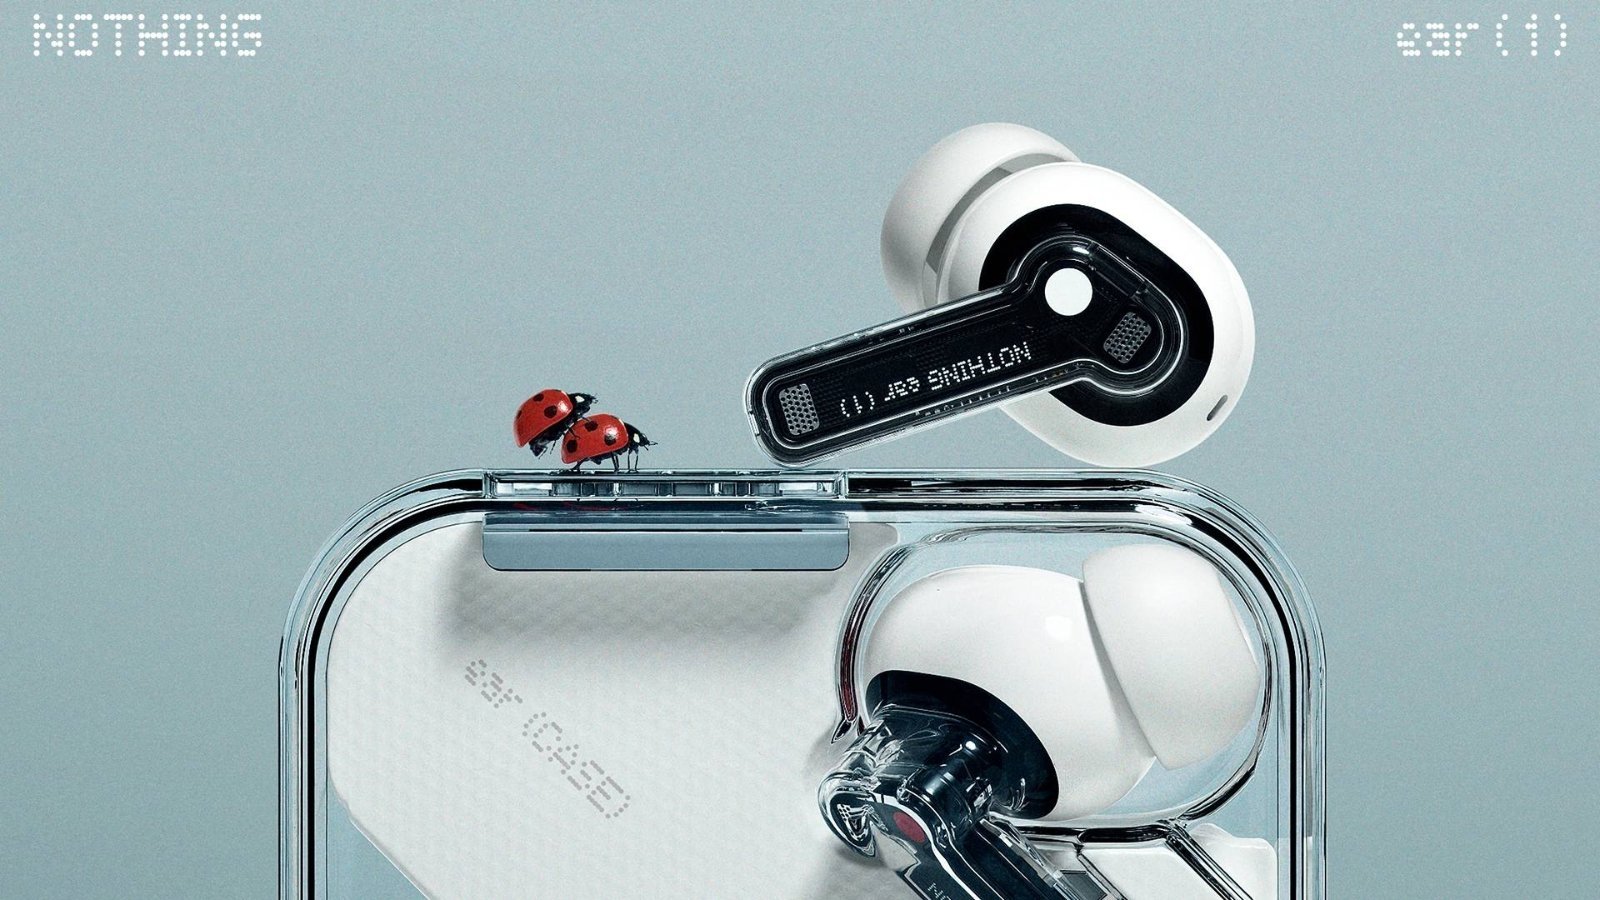 Diseño transparente y 34 horas de batería: los auriculares más bonitos tienen su primer gran descuento